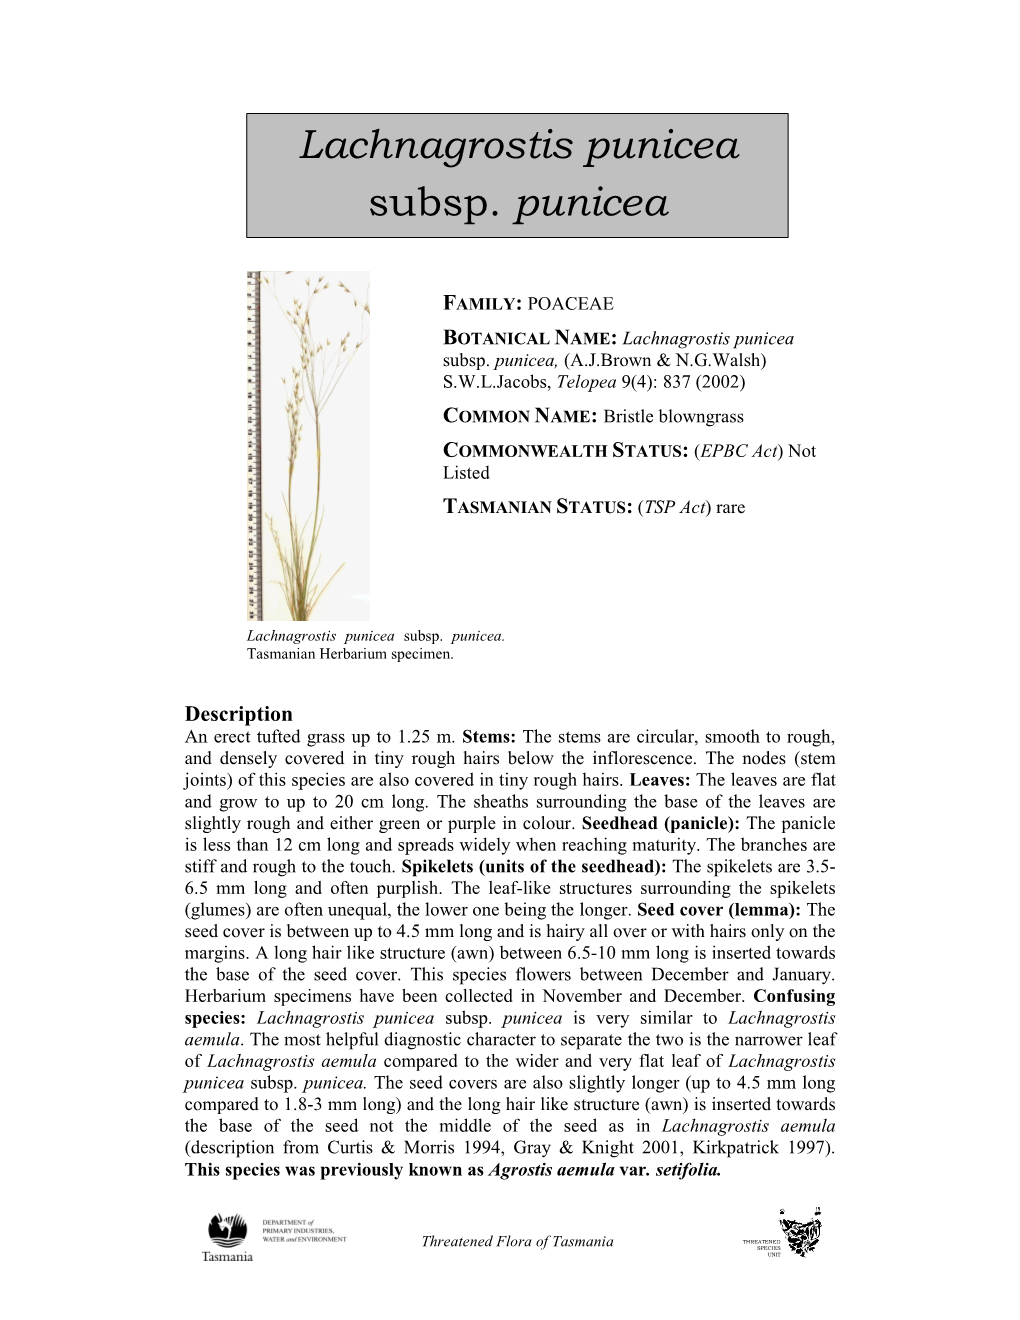 Lachnagrostis Punicea Subsp. Punicea